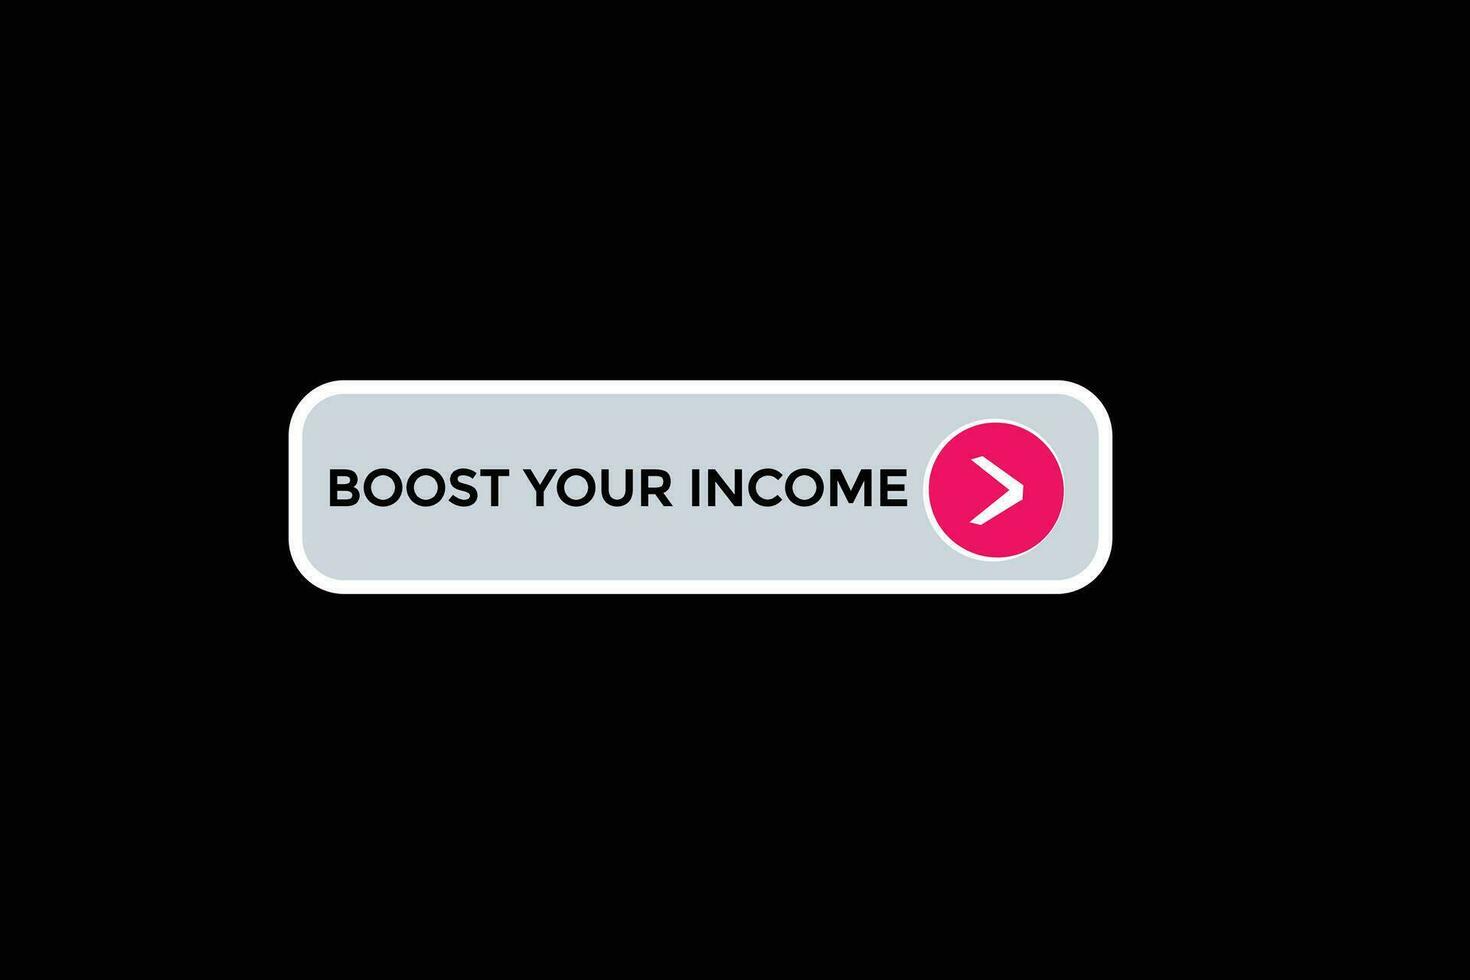 Nouveau renforcer votre le revenu moderne, site Internet, Cliquez sur bouton, niveau, signe, discours, bulle bannière, vecteur